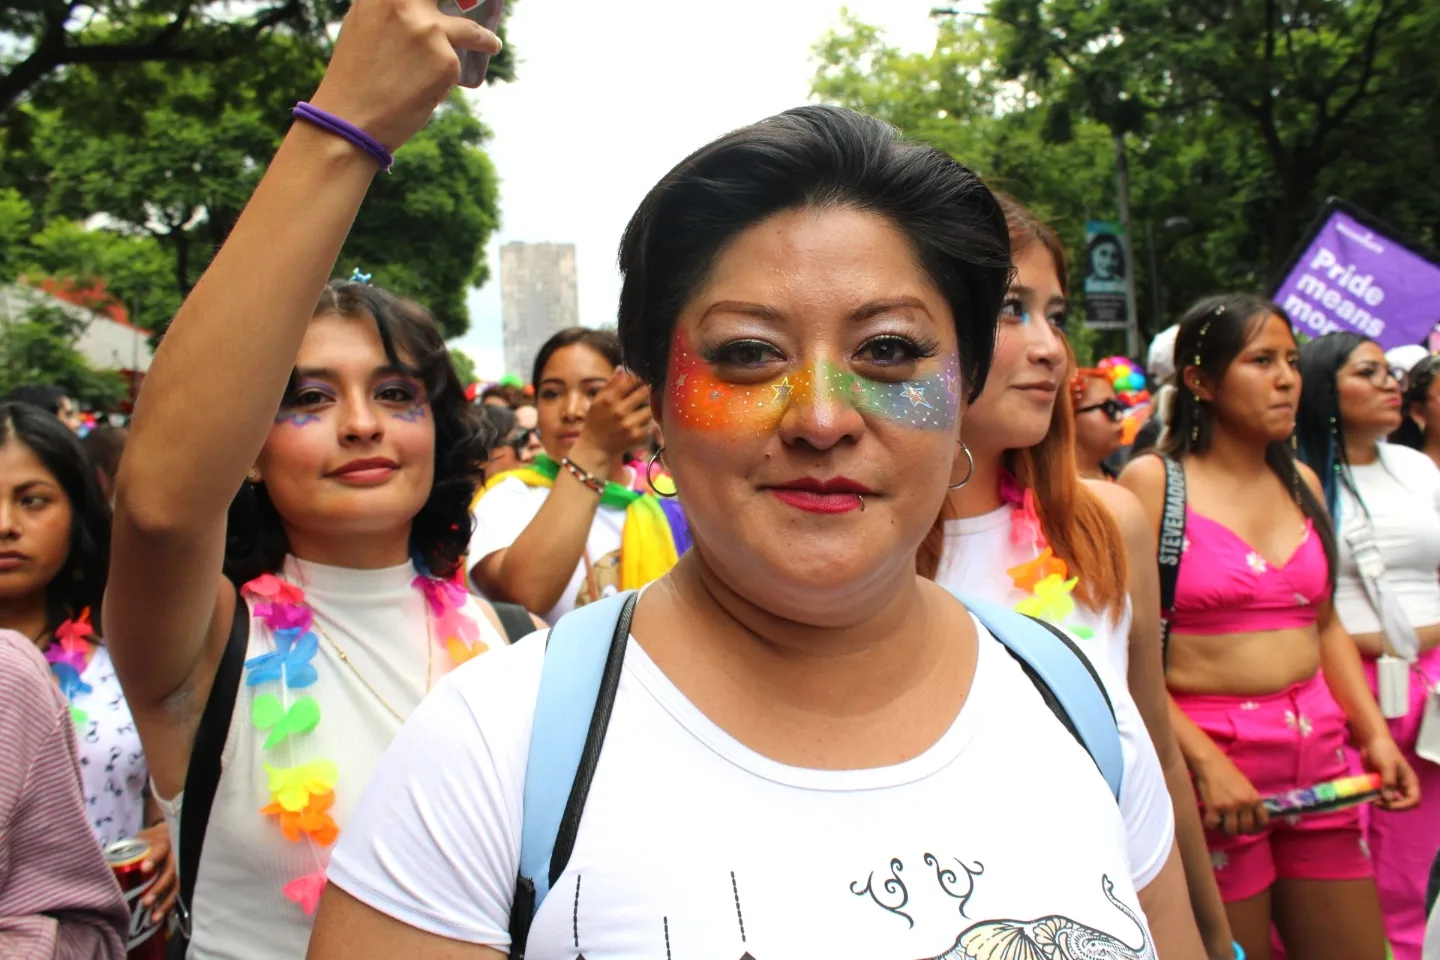 Ciudad de México, 29 de junio del 2024. El día de hoy se realizó la edición número 46 de la Marcha del Orgullo LGBT en la Ciudad de México. Esta movilización es una de las más importantes para la comunidad porque visibiliza, promueve y celebra la diversidad.